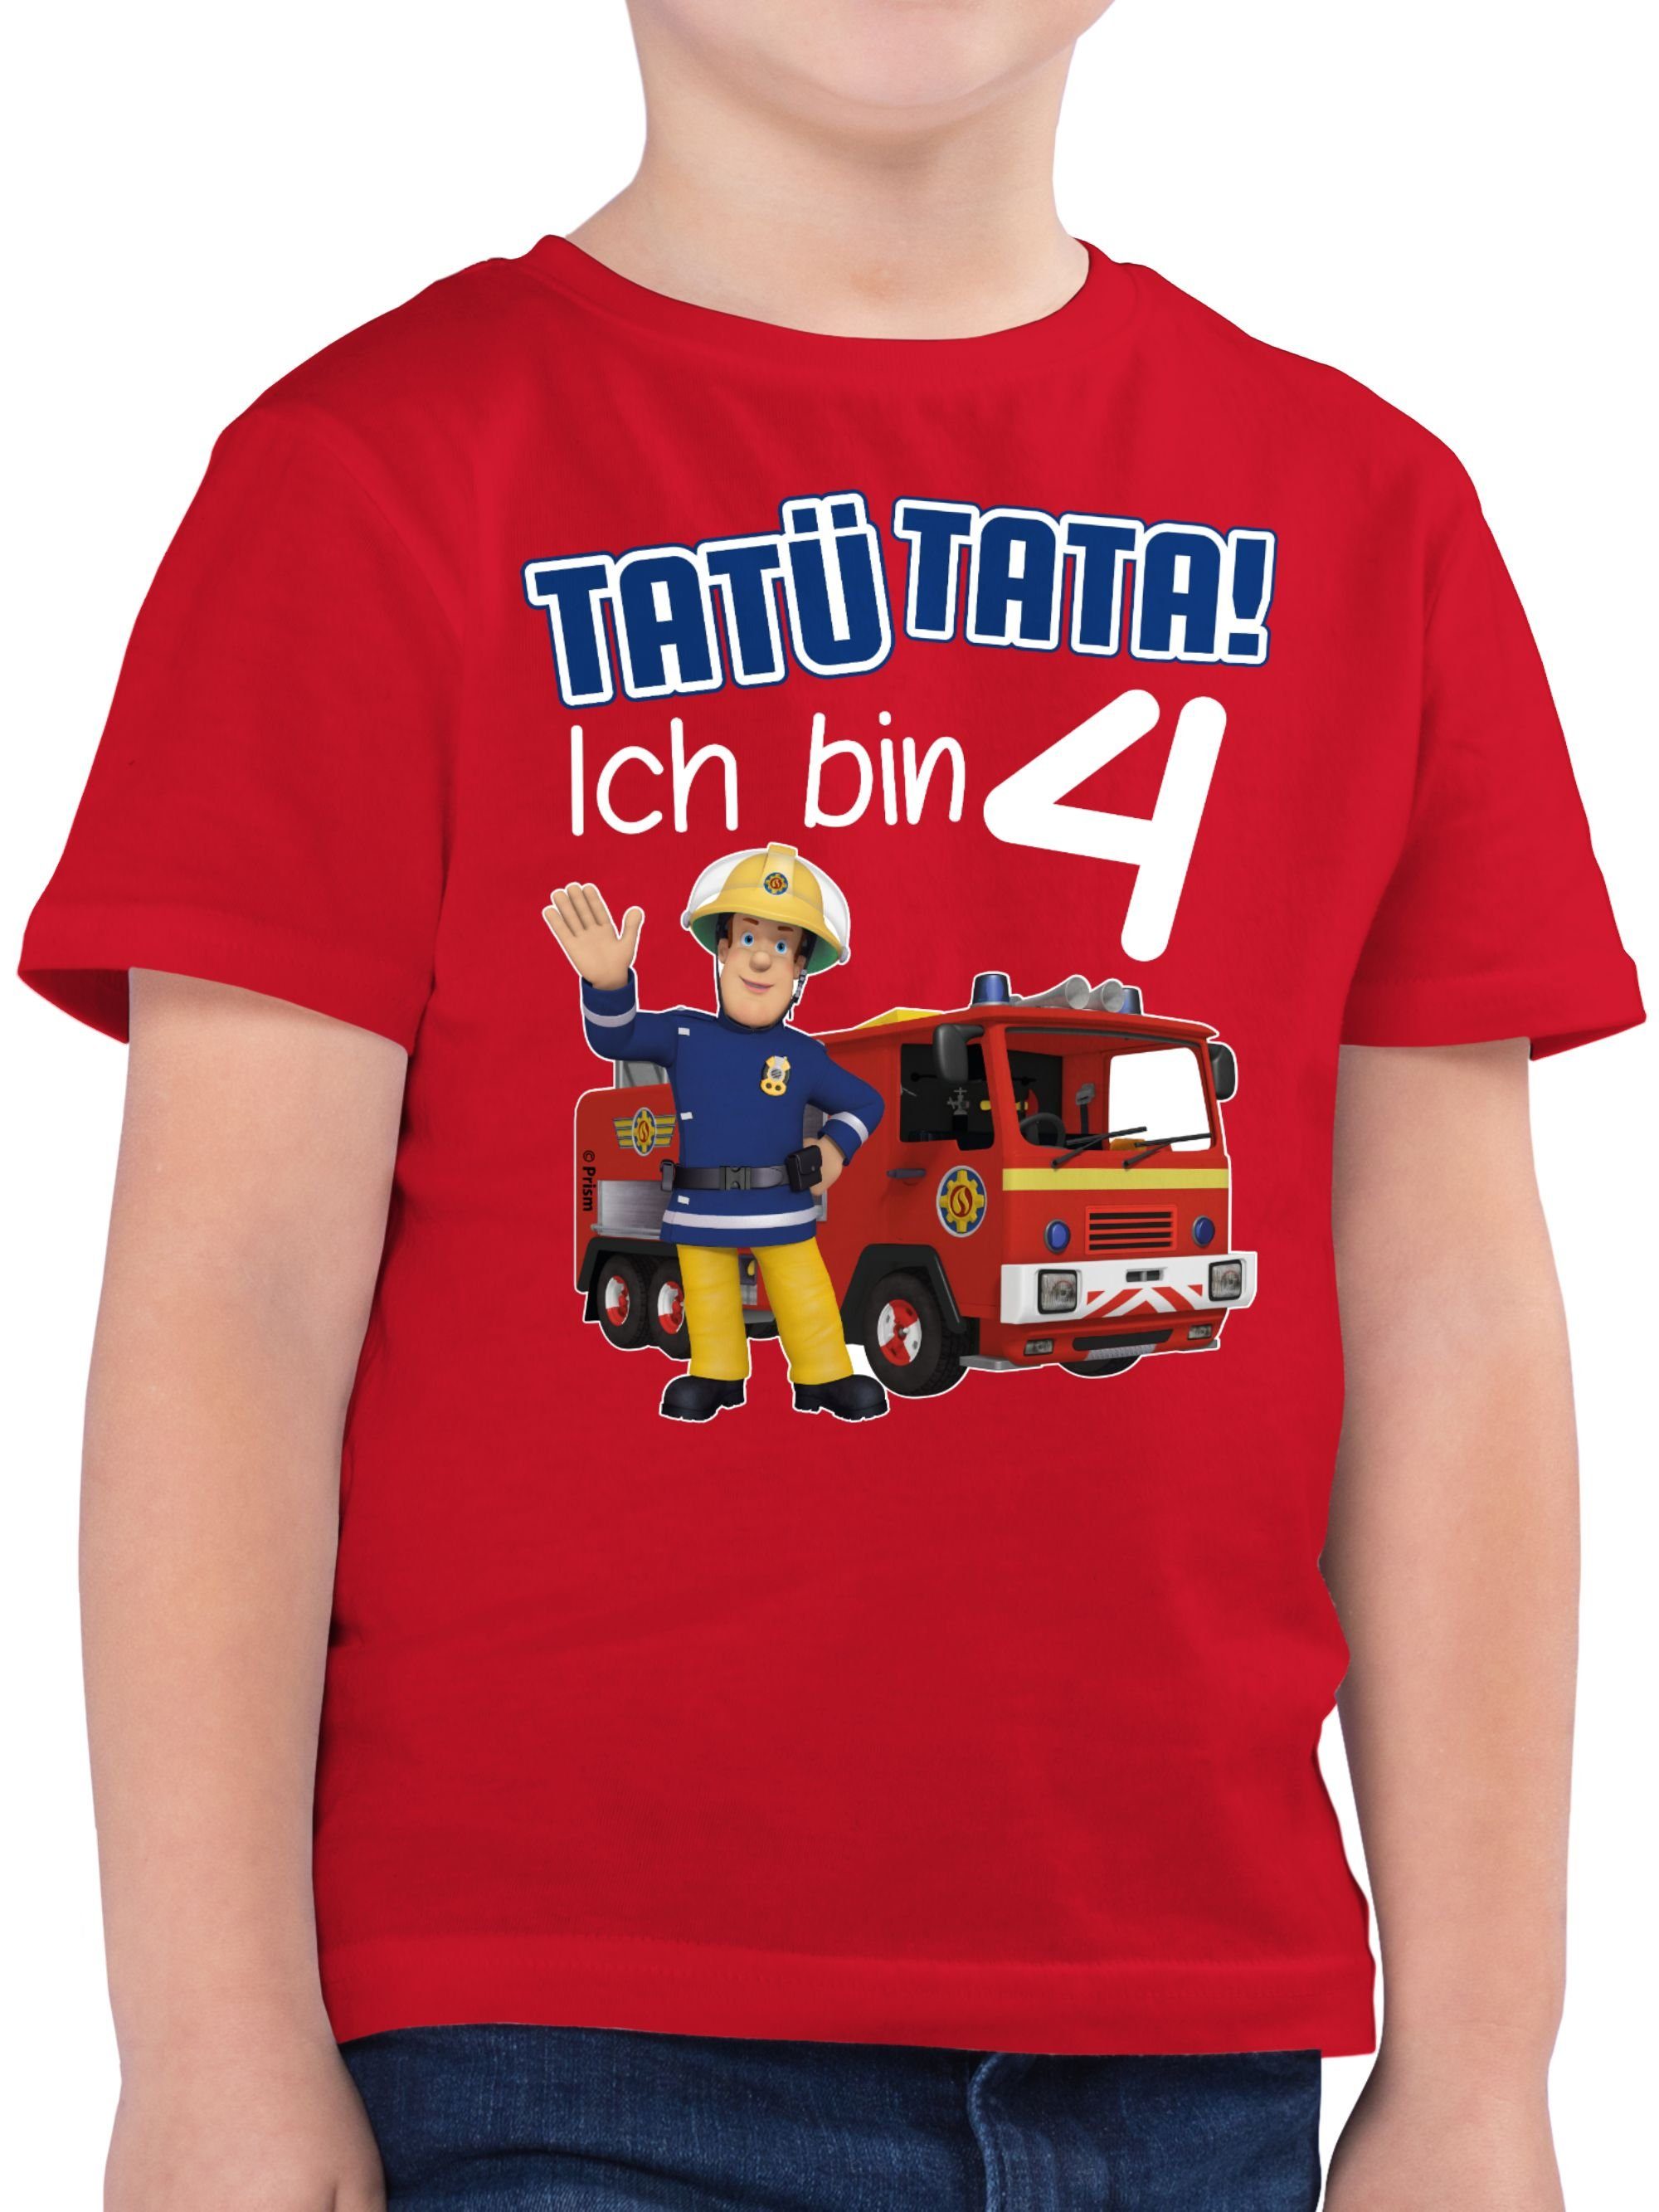 Shirtracer T-Shirt Tatü Rot Geburtstag Sam Ich 01 Feuerwehrmann bin 4 Tata! Jungen